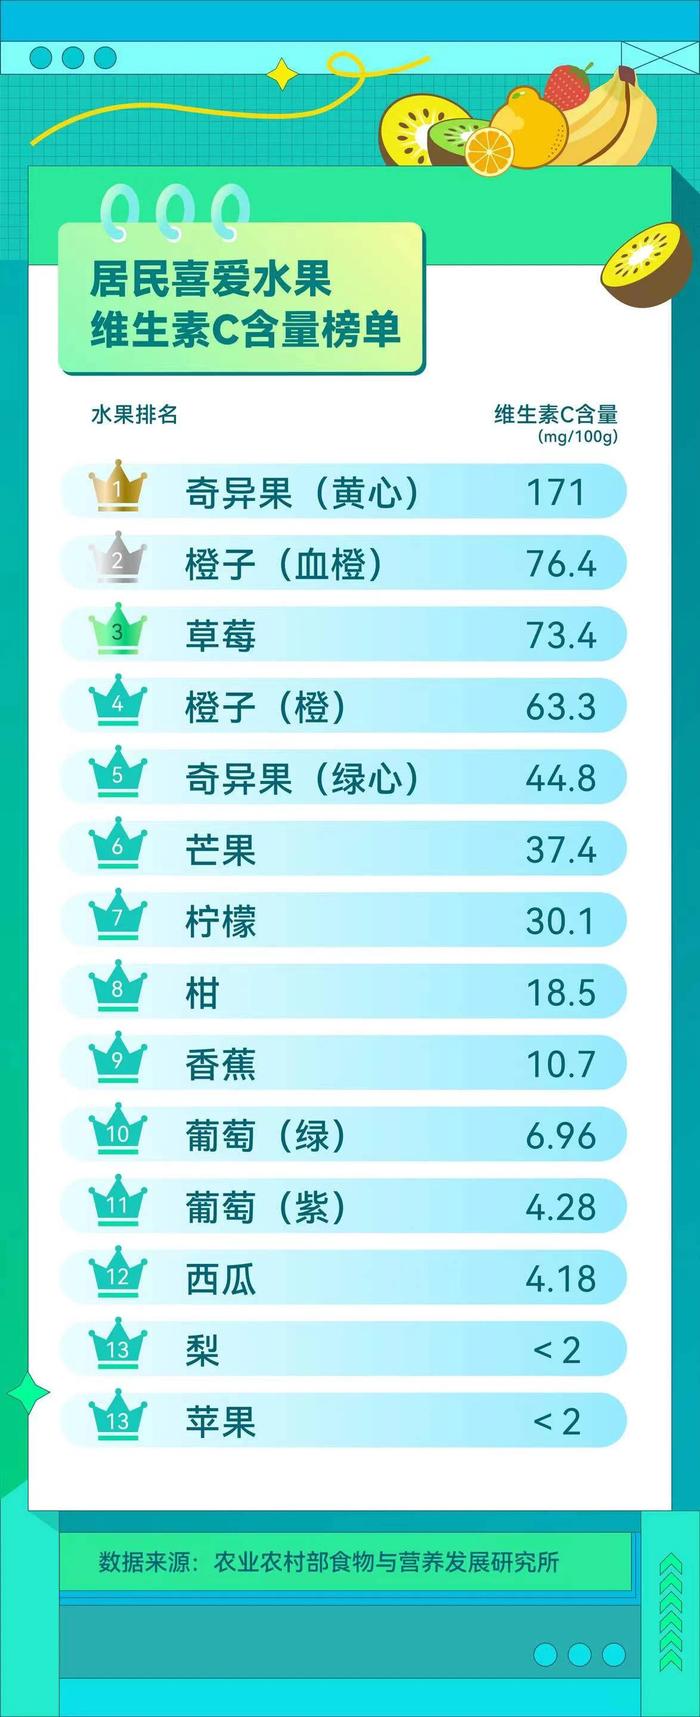 中国好营养《居民喜爱水果维生素C含量榜单》